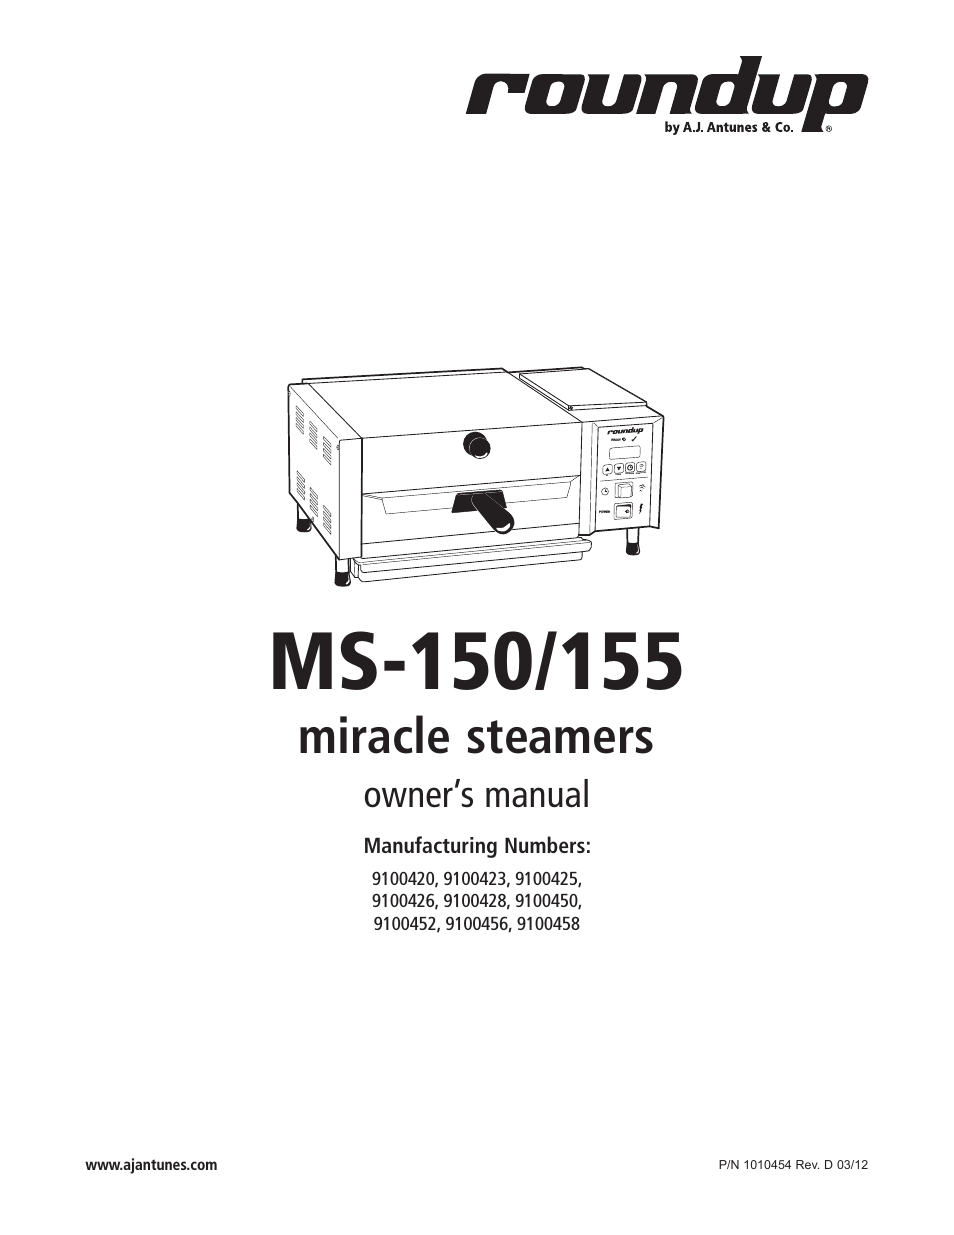 MS-155 9100458